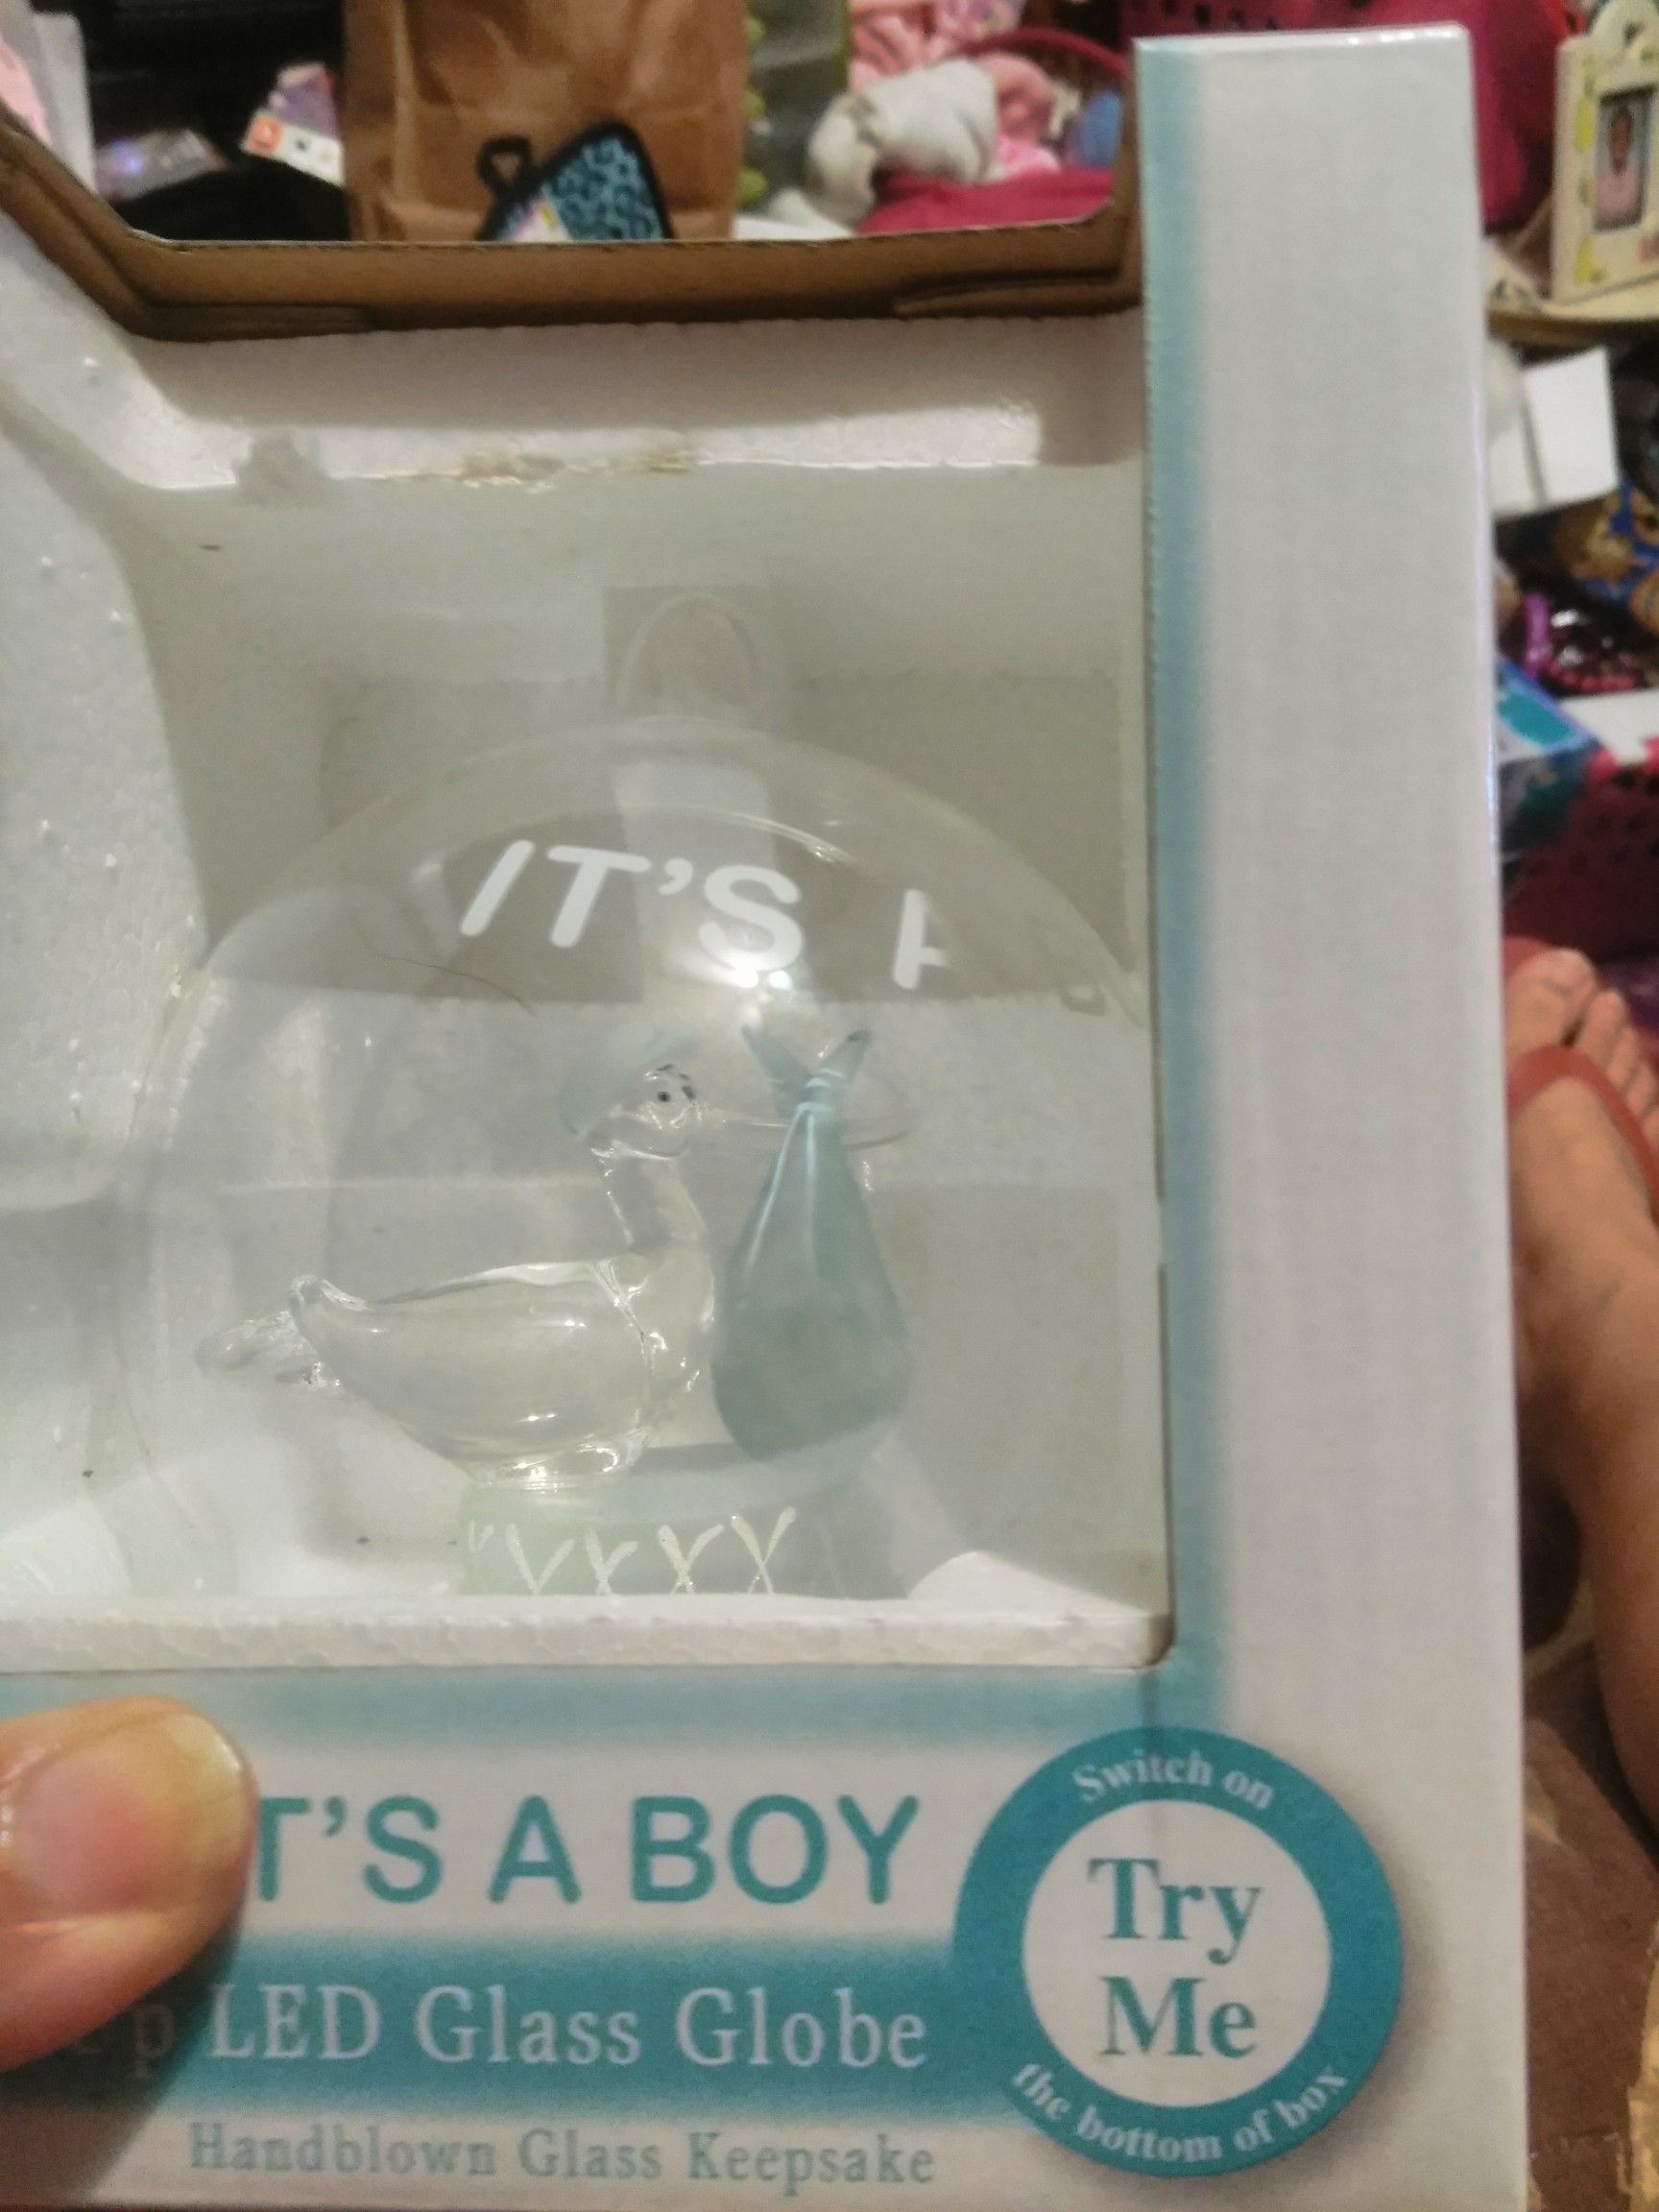 It's A Boy Light-Up LED Glass Globe